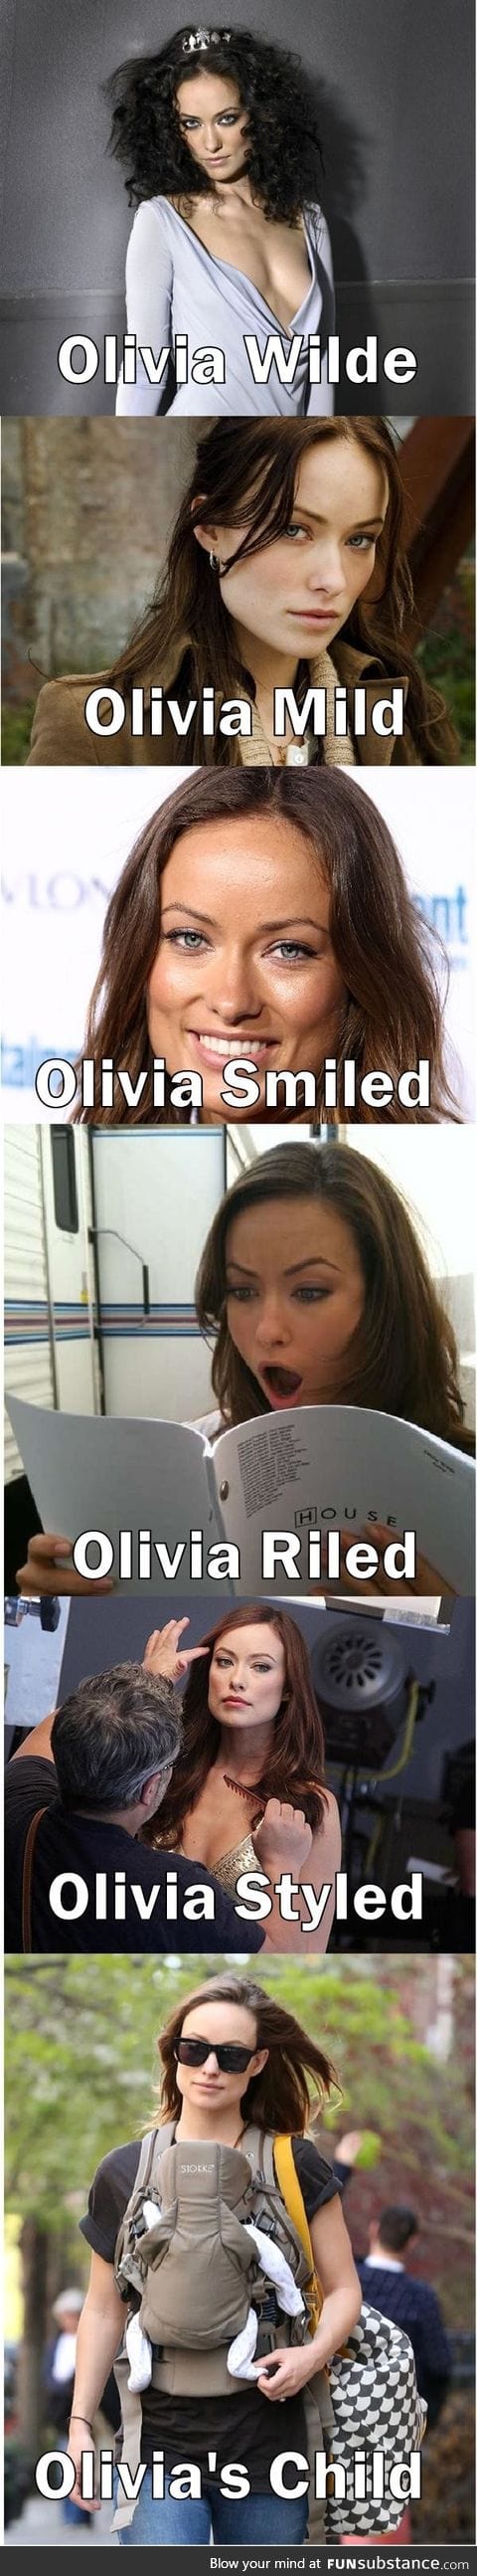 Olivia's Wild!